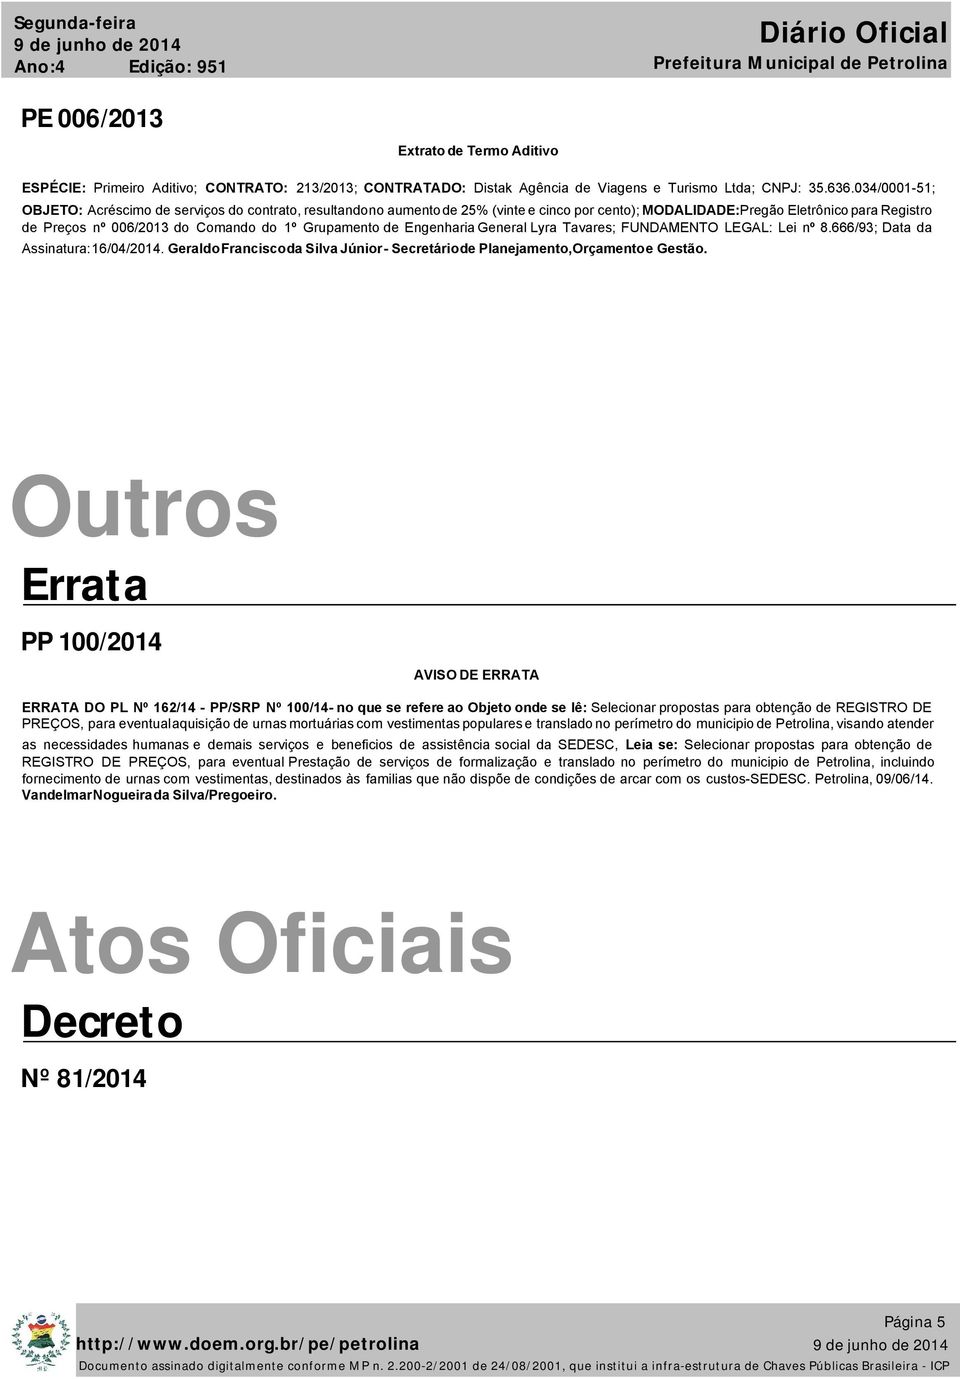 Grupamento de Engenharia General Lyra Tavares; FUNDAMENTO LEGAL: Lei nº 8.666/93; Data da Assinatura: 16/04/2014. Geraldo Francisco da Silva Júnior - Secretário de Planejamento,Orçamento e Gestão.